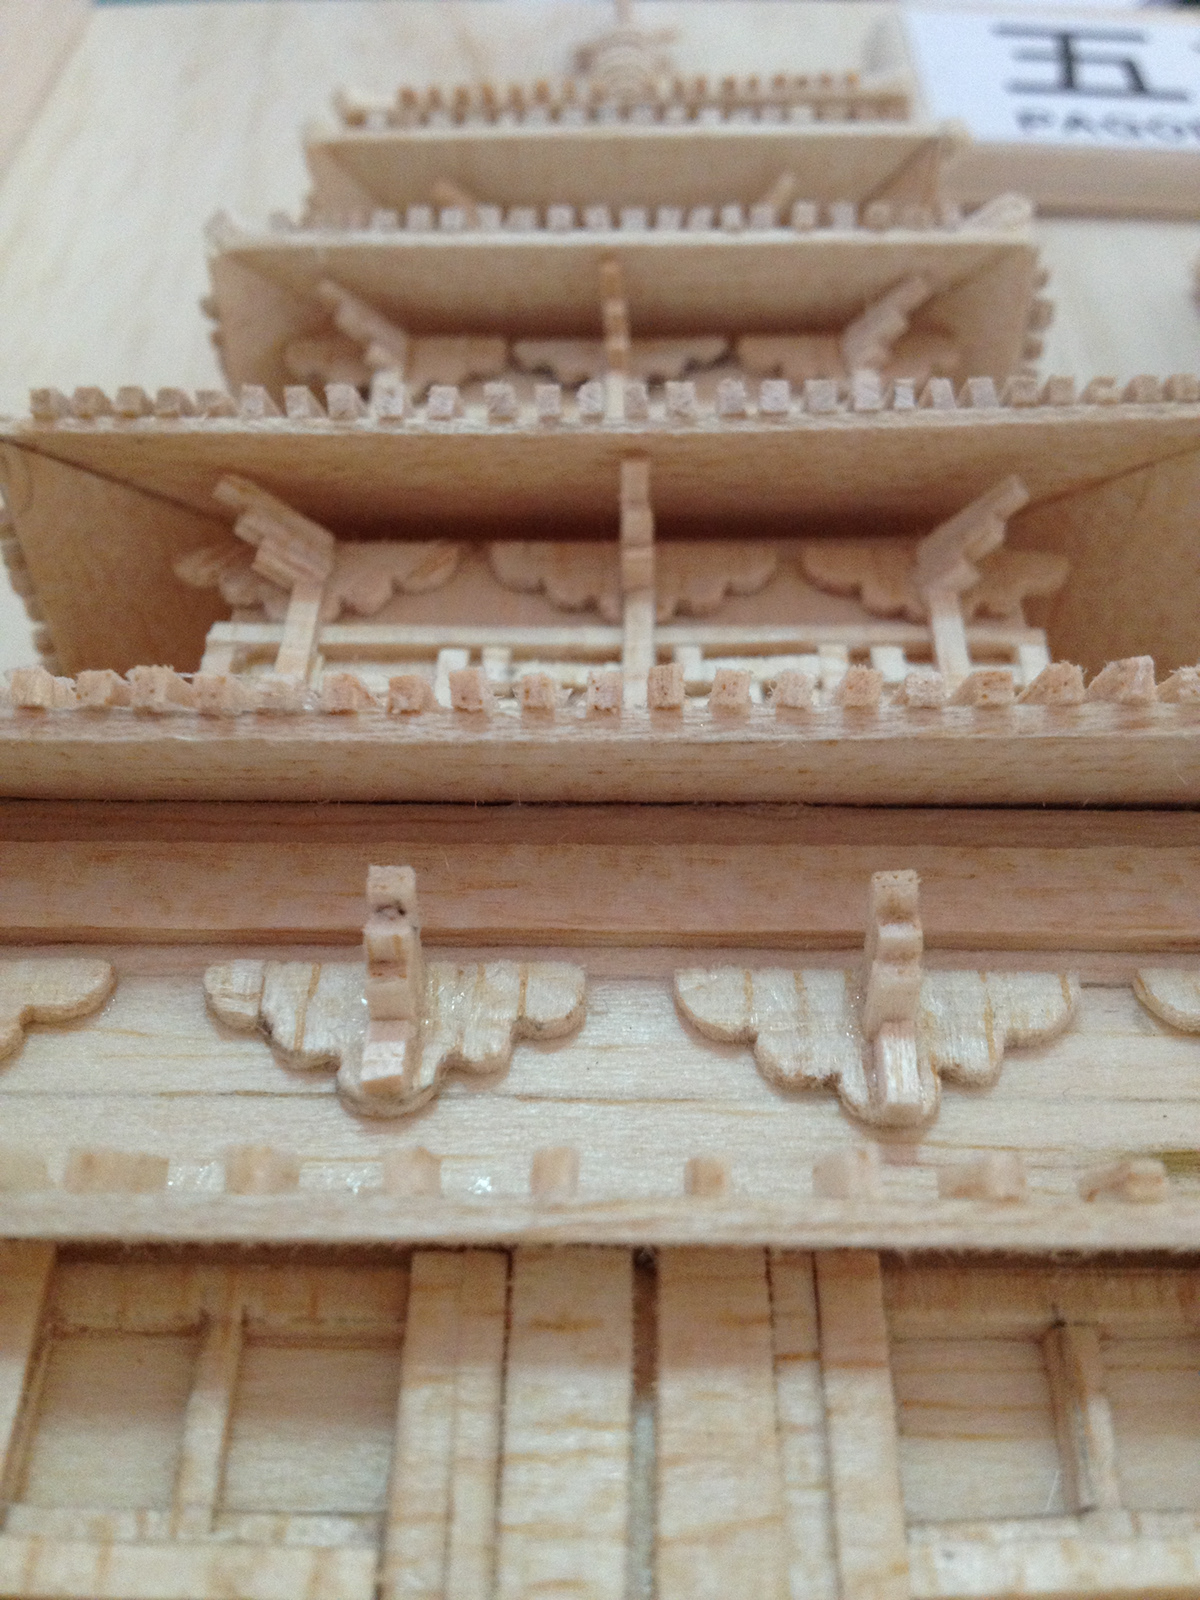 Model Making pagoda horyuji temple